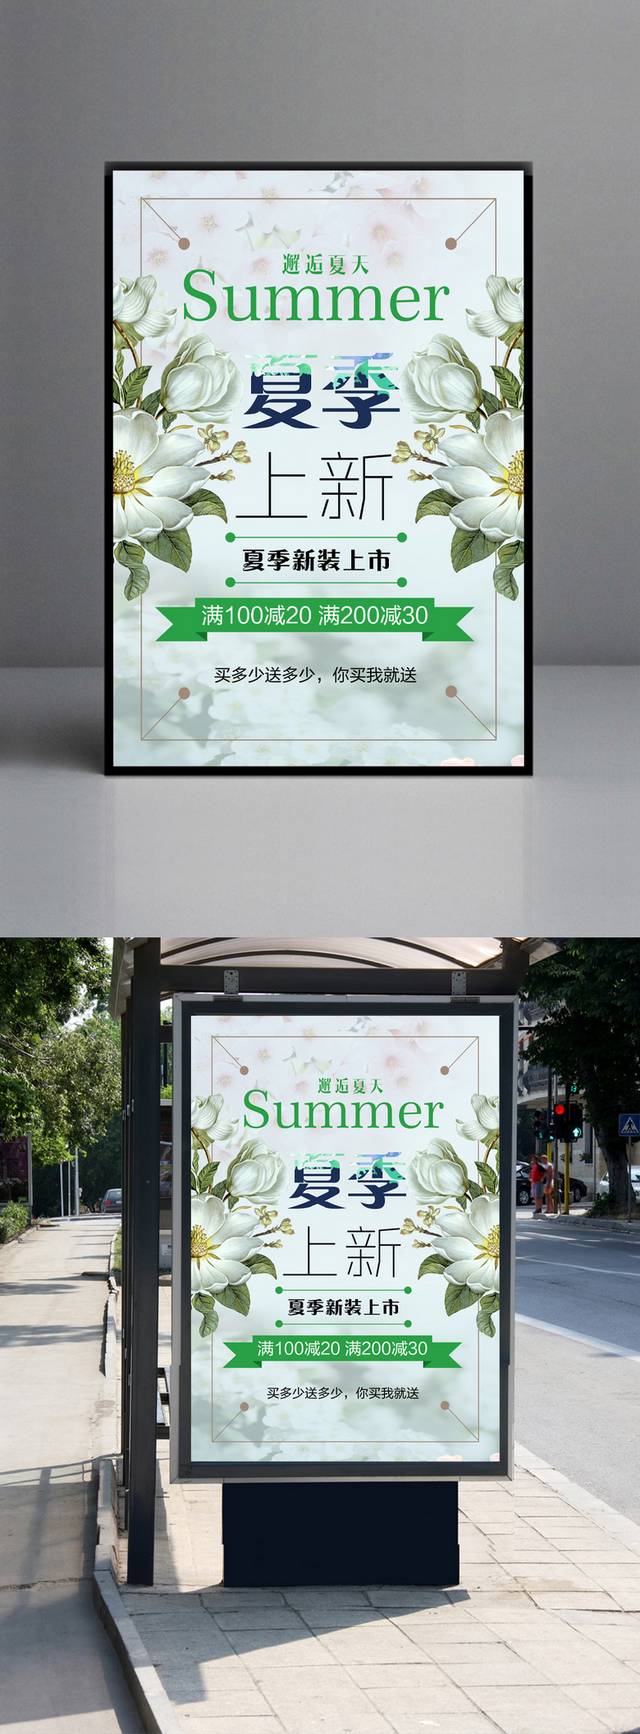 精品创意夏日促销海报模板下载